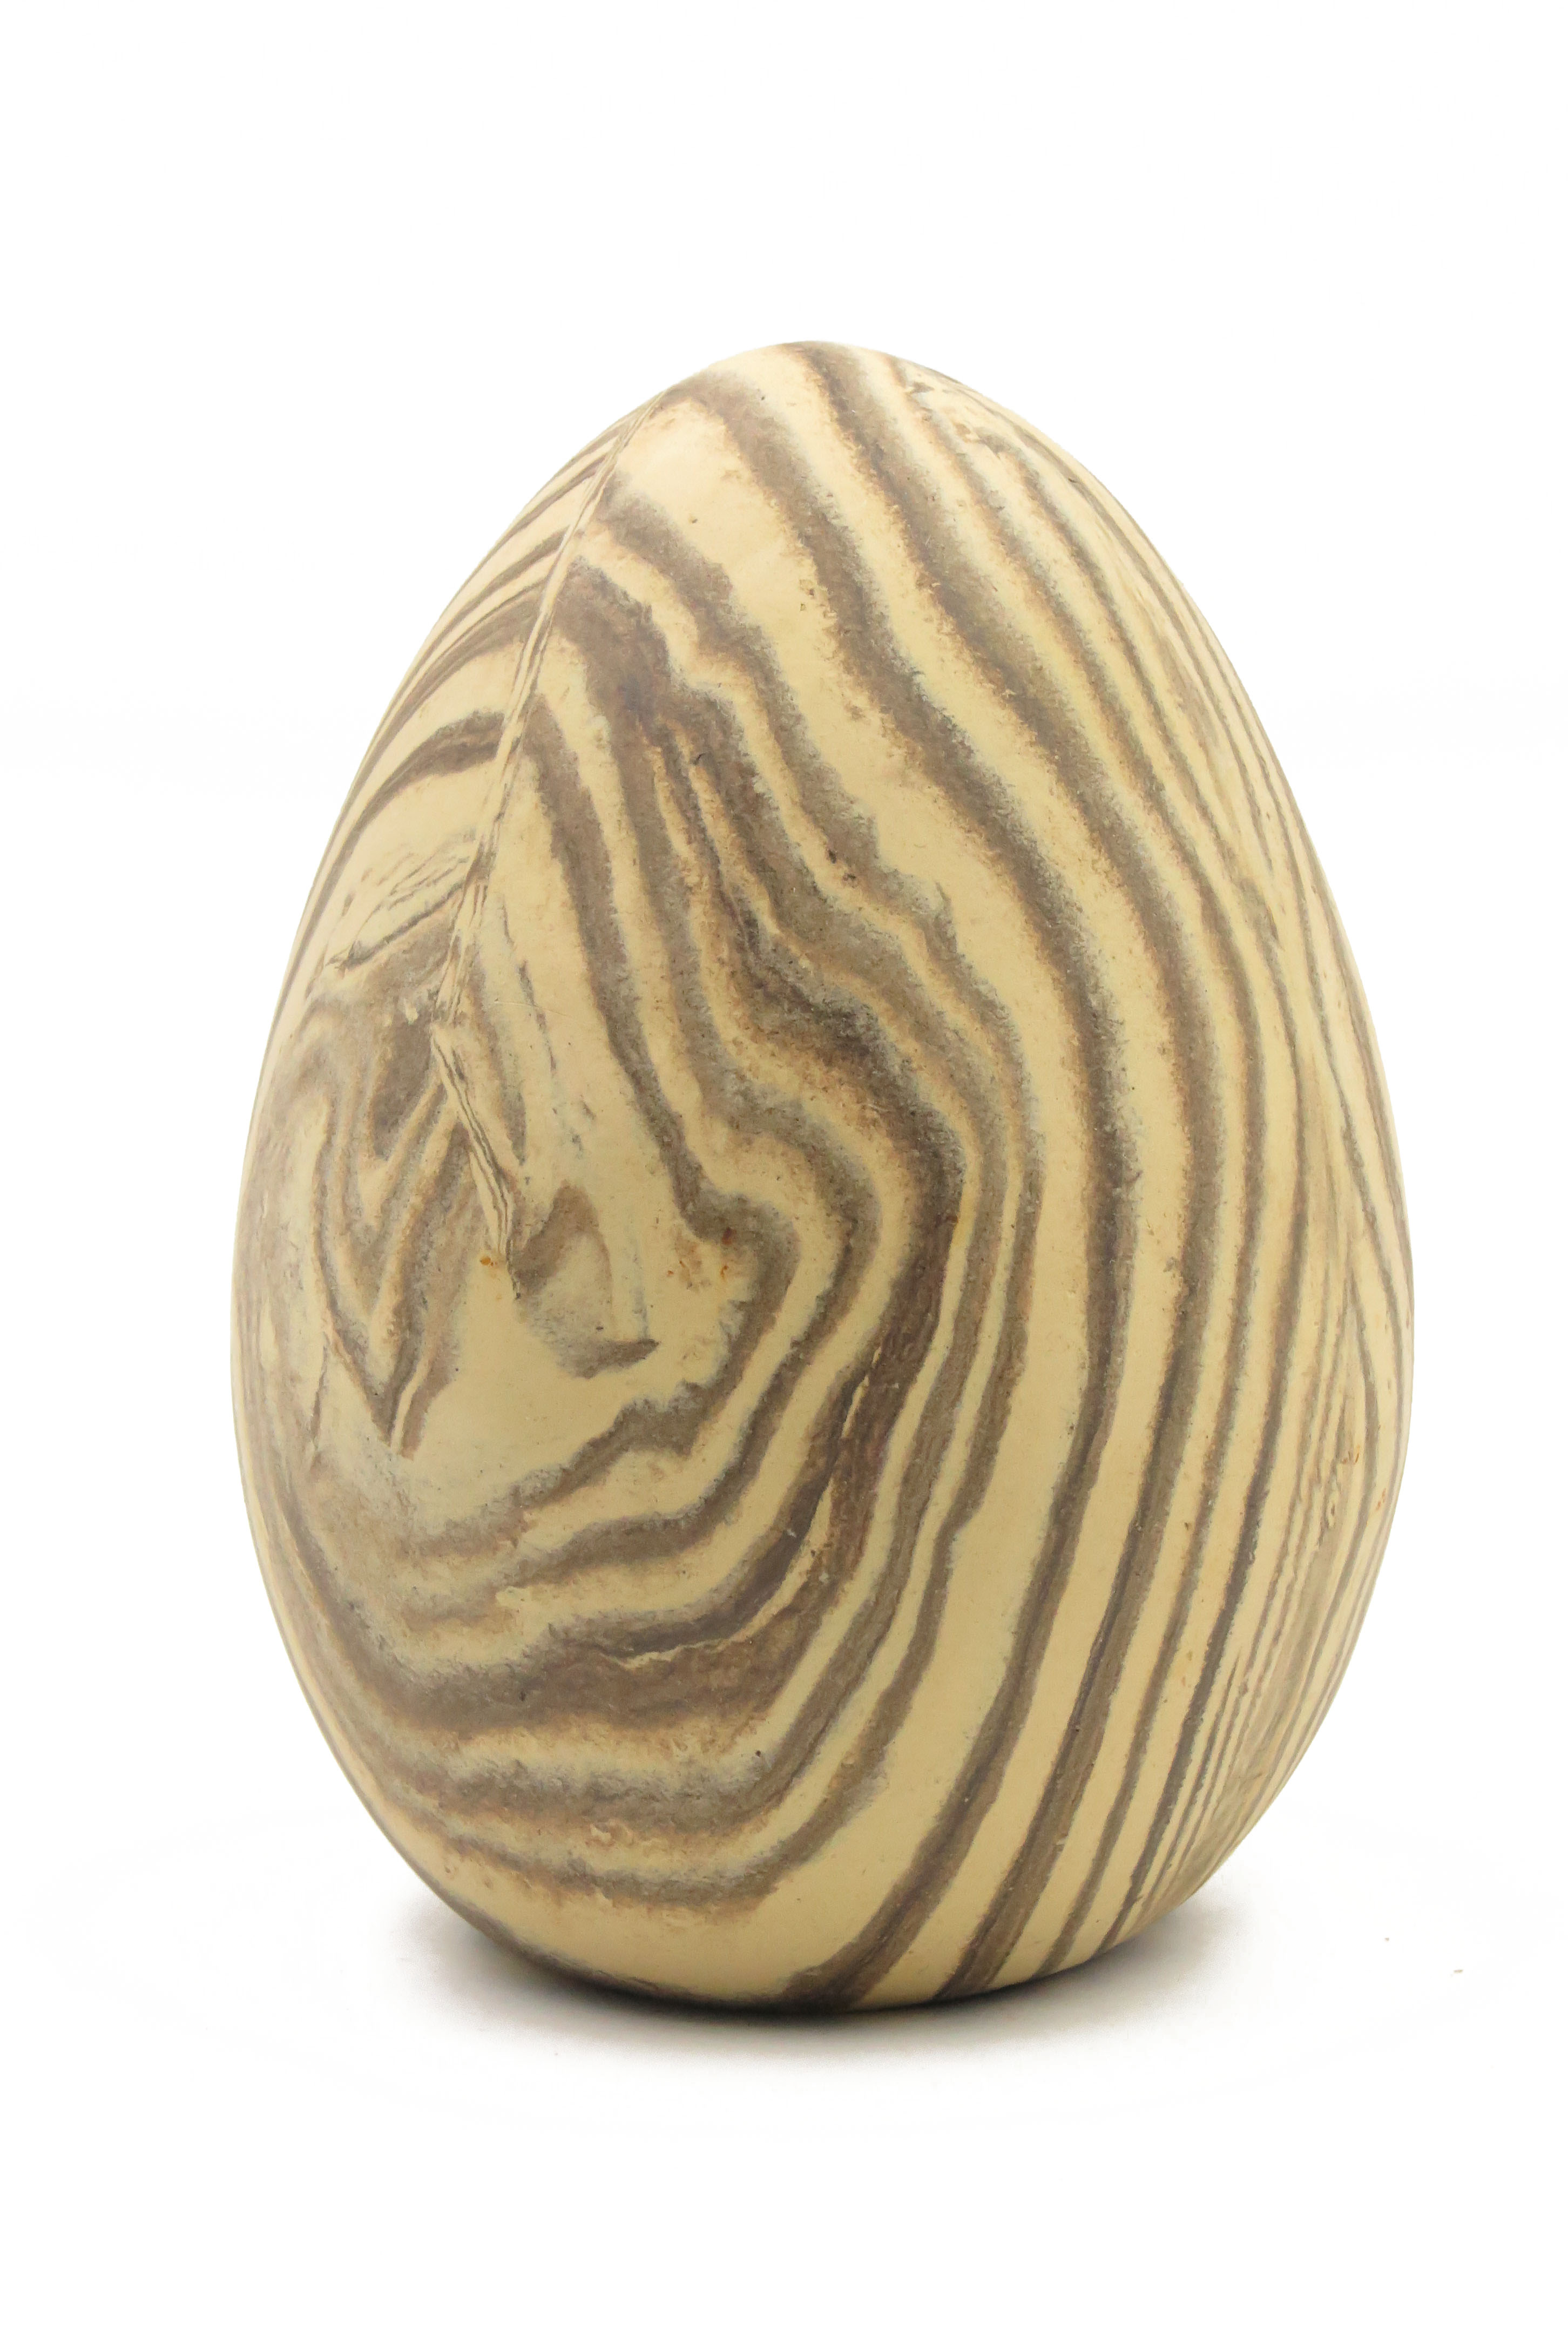  Eier wie aus Stein gehauen/ M 13 cm